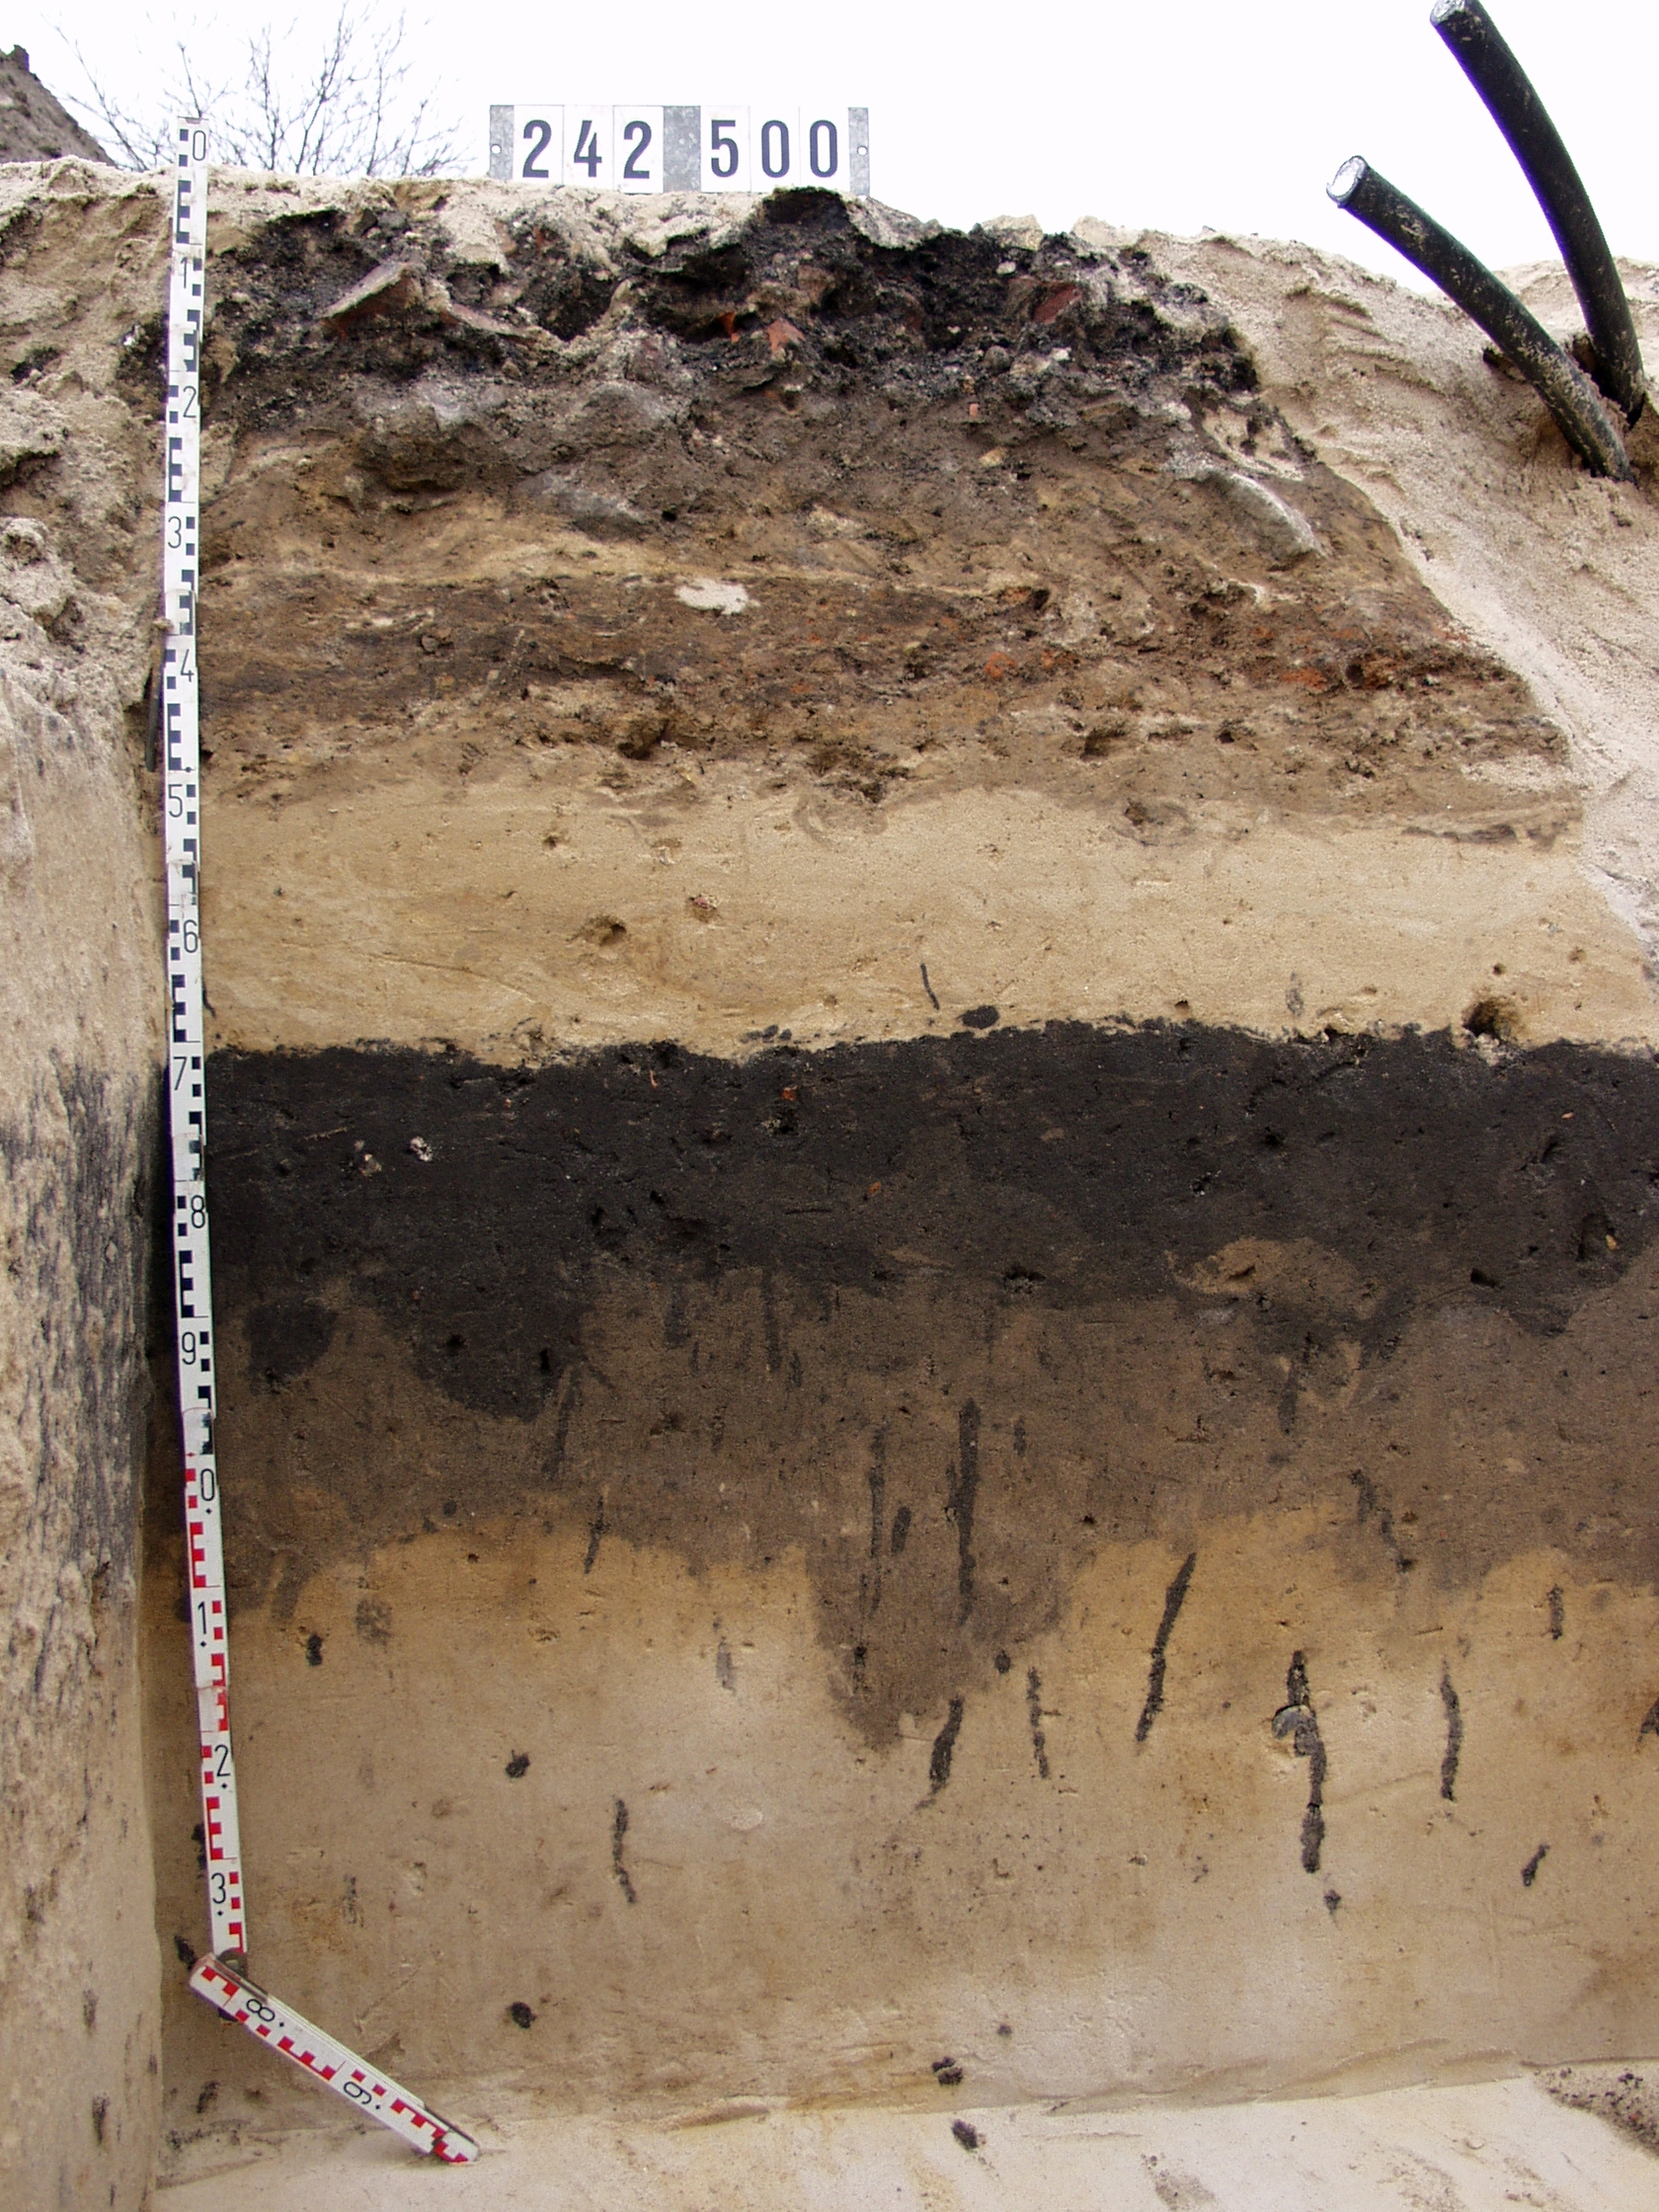 Das Bild zeigt eine Nahaufnahme eines Bodenprofils mit seinen verschiedenen Bodenhorizonten, die verschiedene Bereiche voneinander abgrenzen